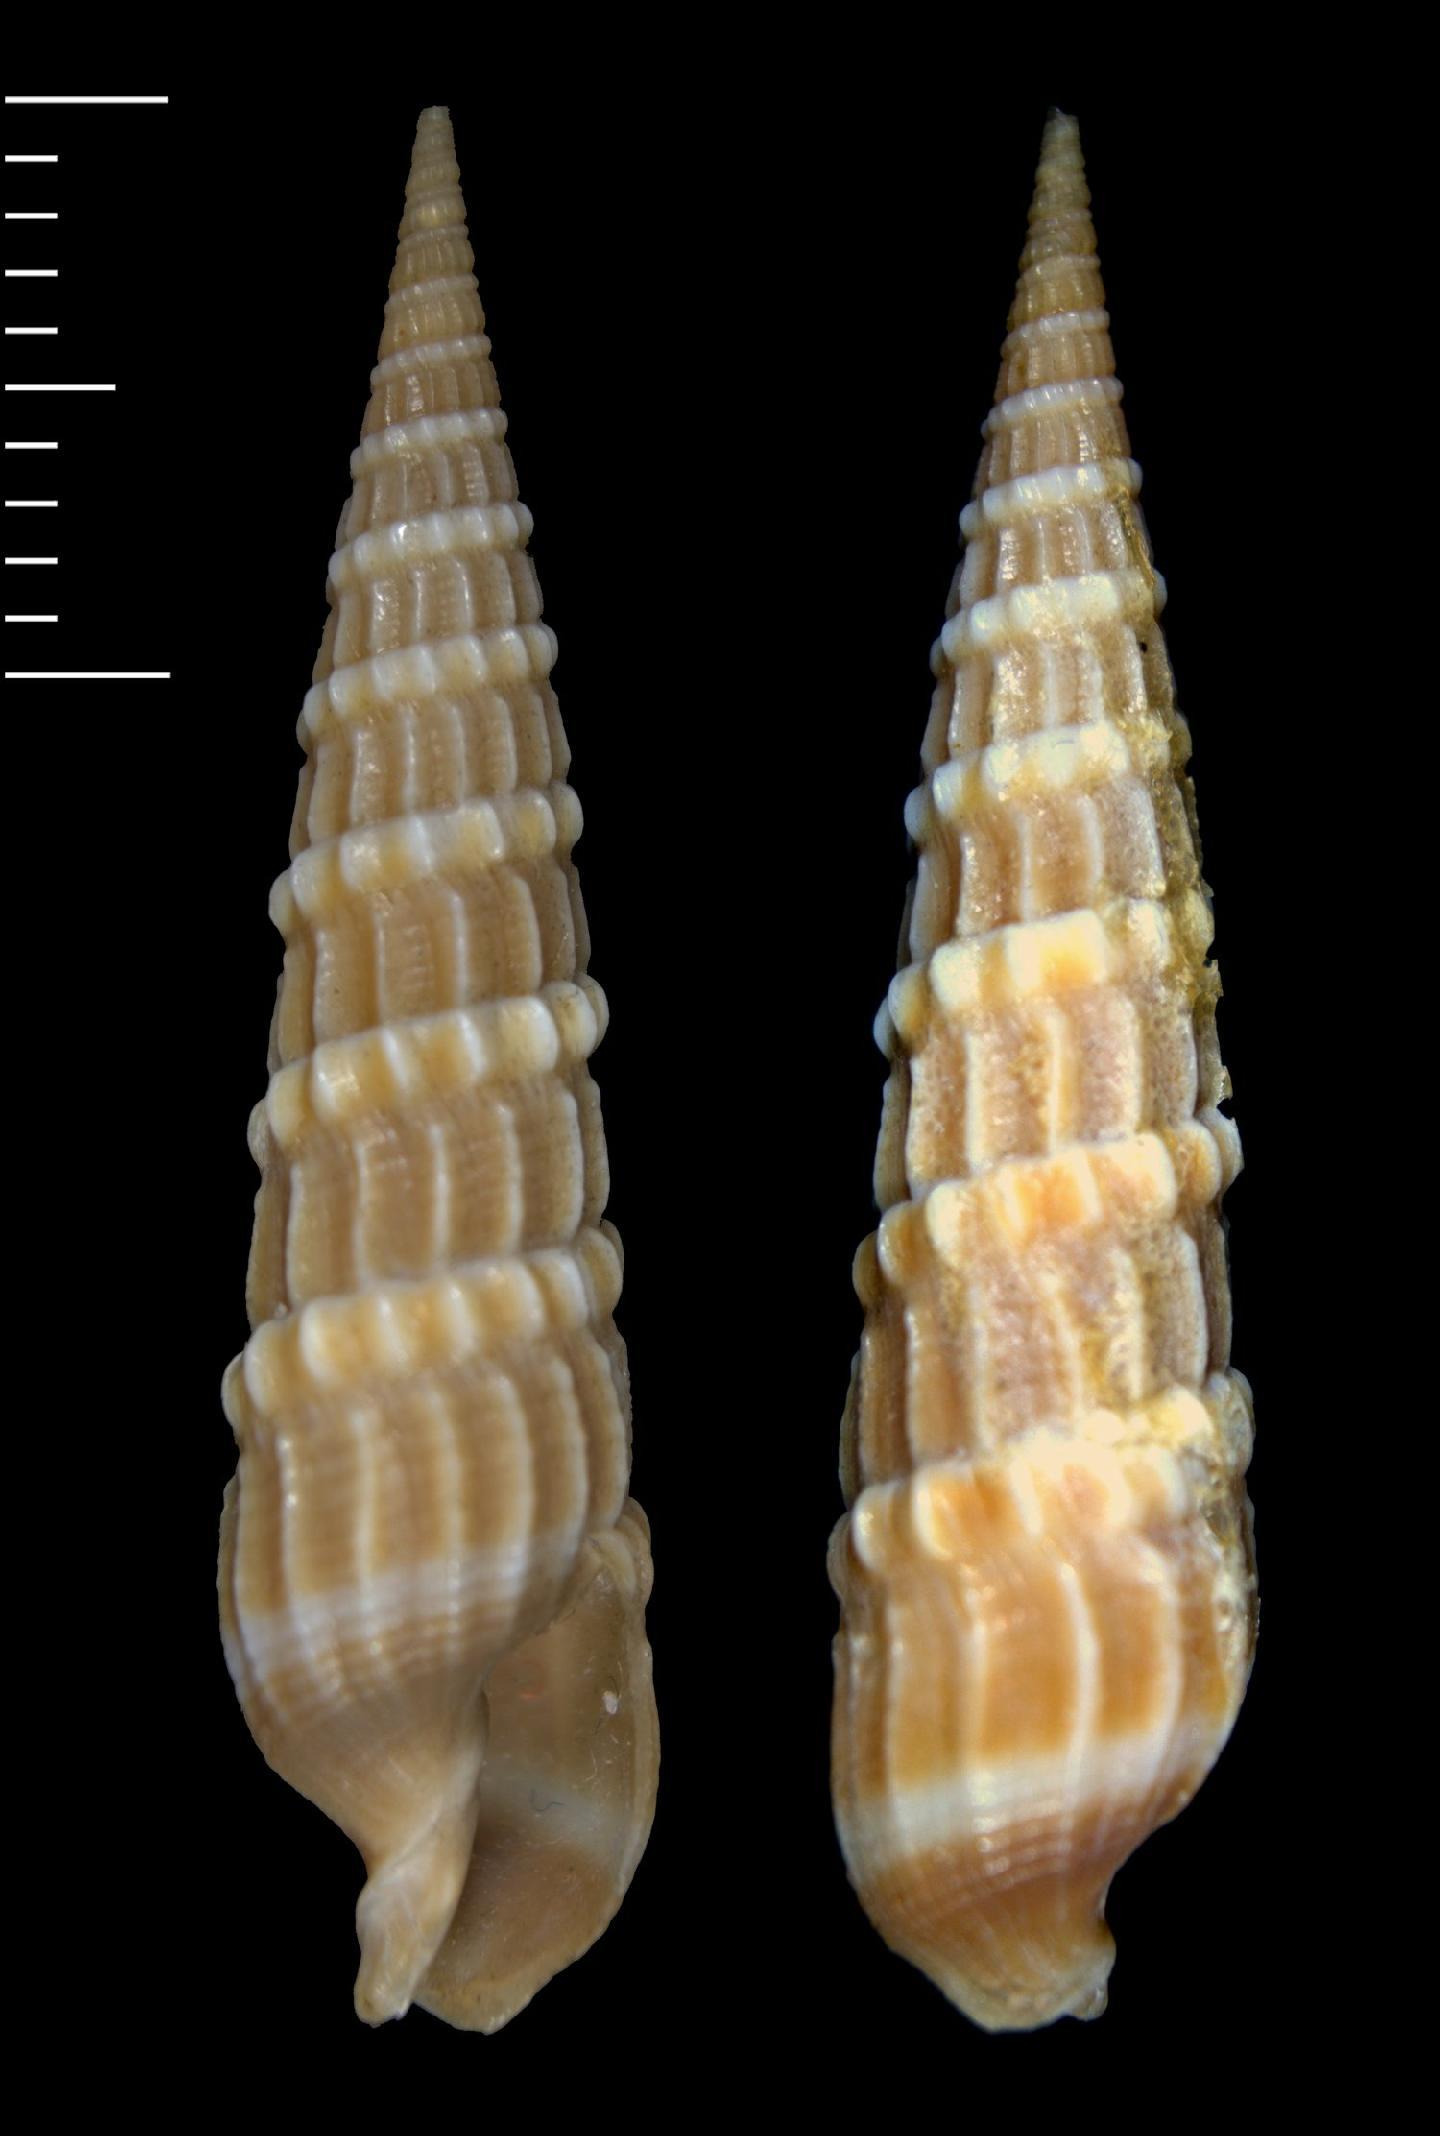 To NHMUK collection (Terebra albicostata A. Adams & Reeve, 1850; SYNTYPE; NHMUK:ecatalogue:5749397)